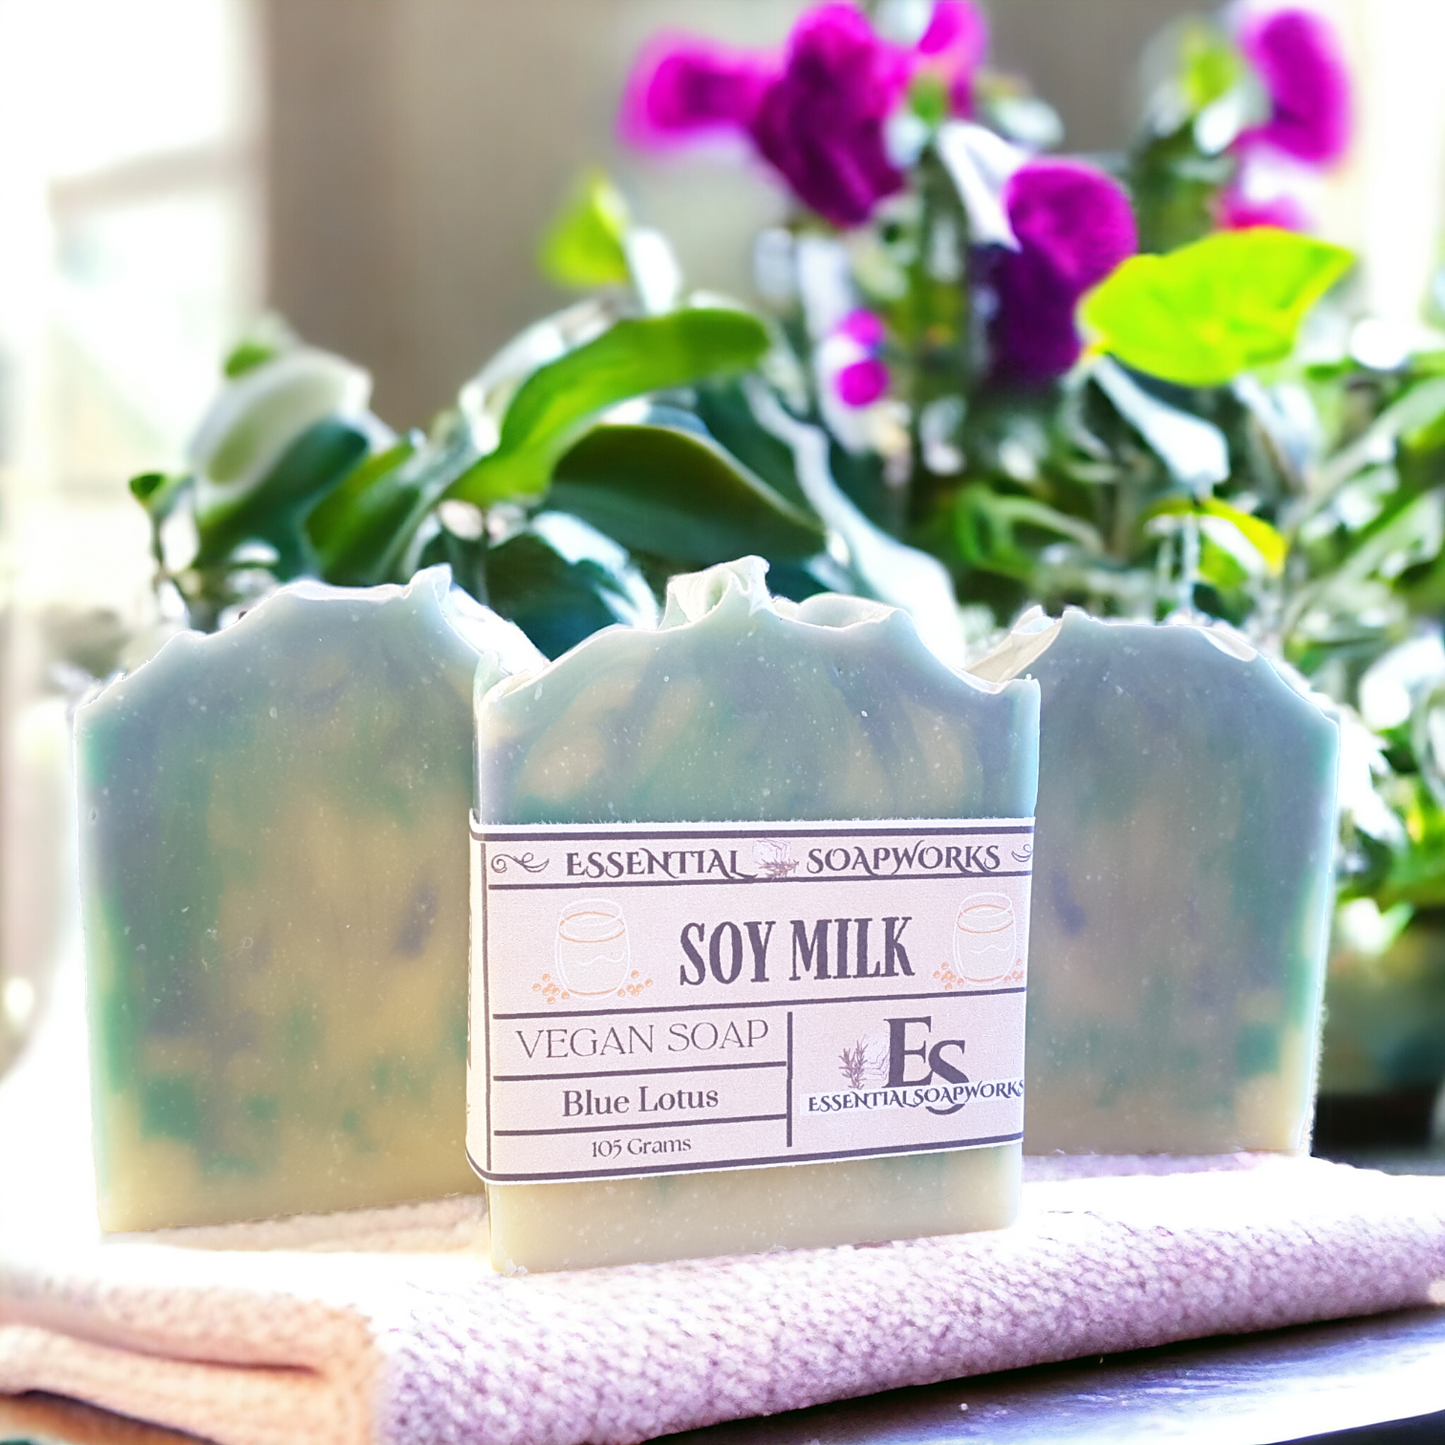 Blue Lotus Soy Milk Vegan Soap